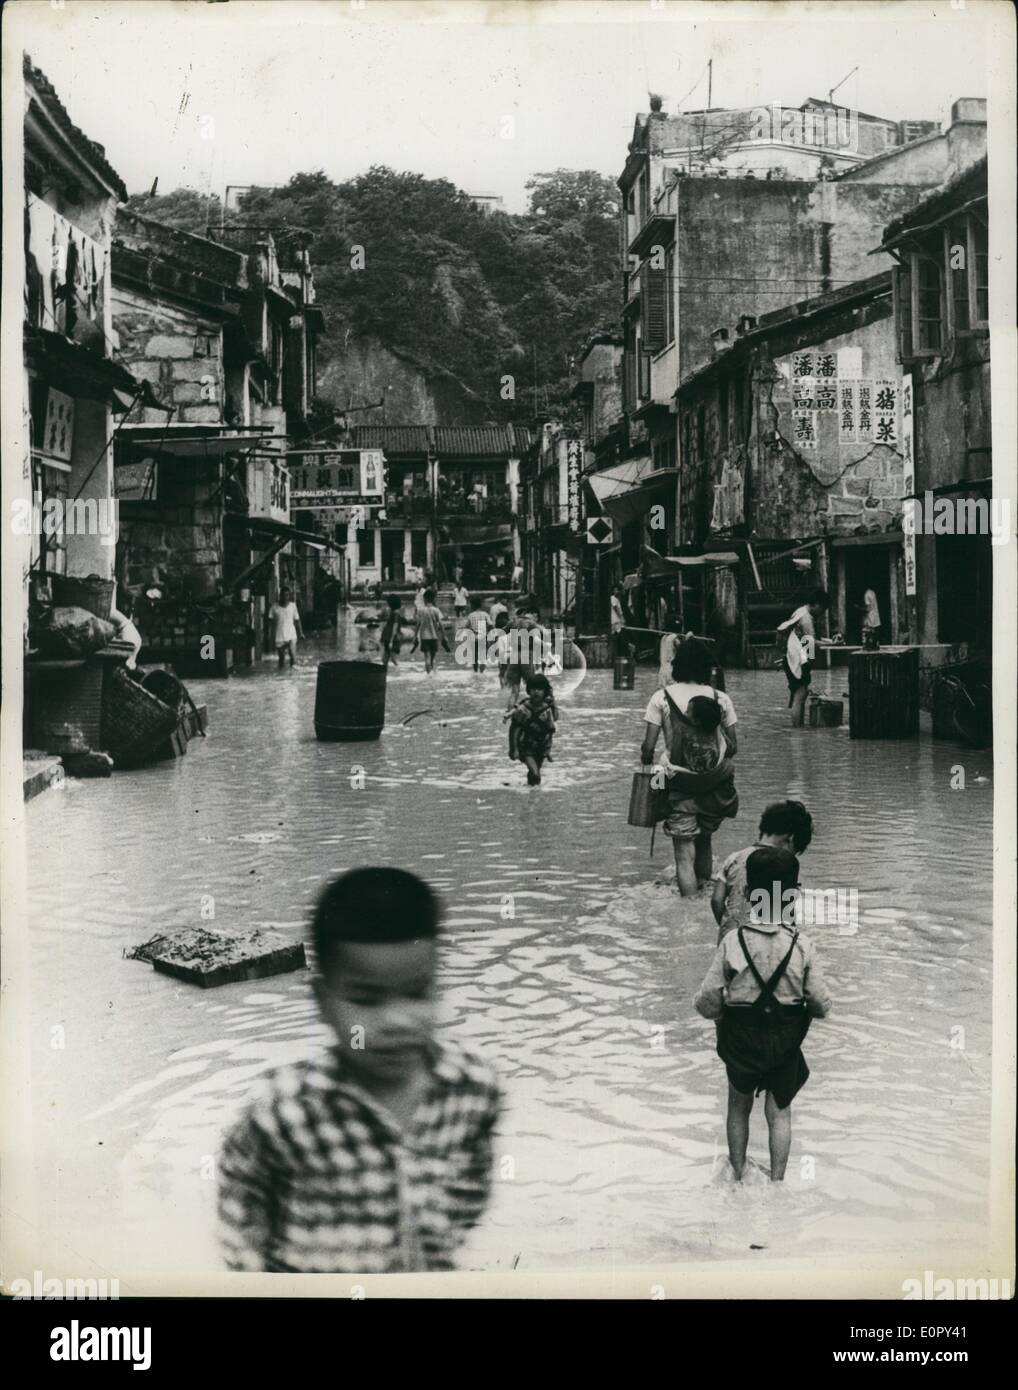 05 maggio 1957 - La scena in hongkong dopo precipitazione più pesante mai quarantanove ucciso-cinque mila senzatetto: le piogge è venuto a Colonia di Hong Kong di recente - ed è sceso per ora dopo ora per due giorni senza una pausa. In sessanta ore più di venti centimetri di pioggia caduta - la più pesante mai registrata in Hong Kong. Le tempeste che hanno accompagnato la pioggia è costato la vita a 49 persone - e reso un altro 5.000 senzatetto. La foto mostra la scena come persone wade lungo una strada allagata nel rifugiato cinese abitato di Hong kong Foto Stock